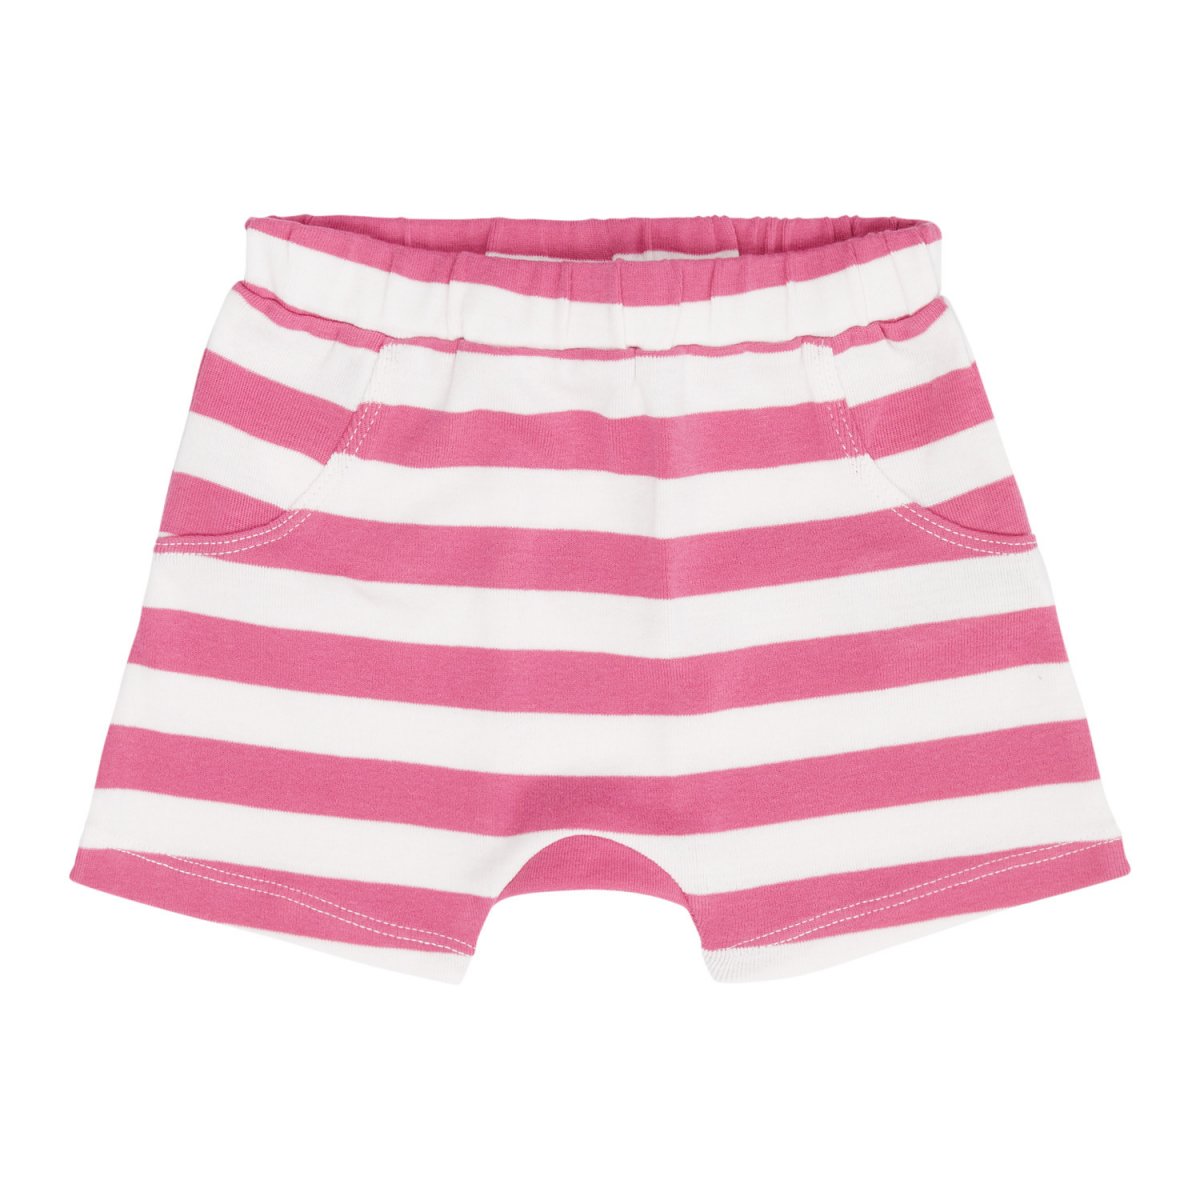 Pantaloncini Retro righe rosa per bimba in puro cotone biologico_93006